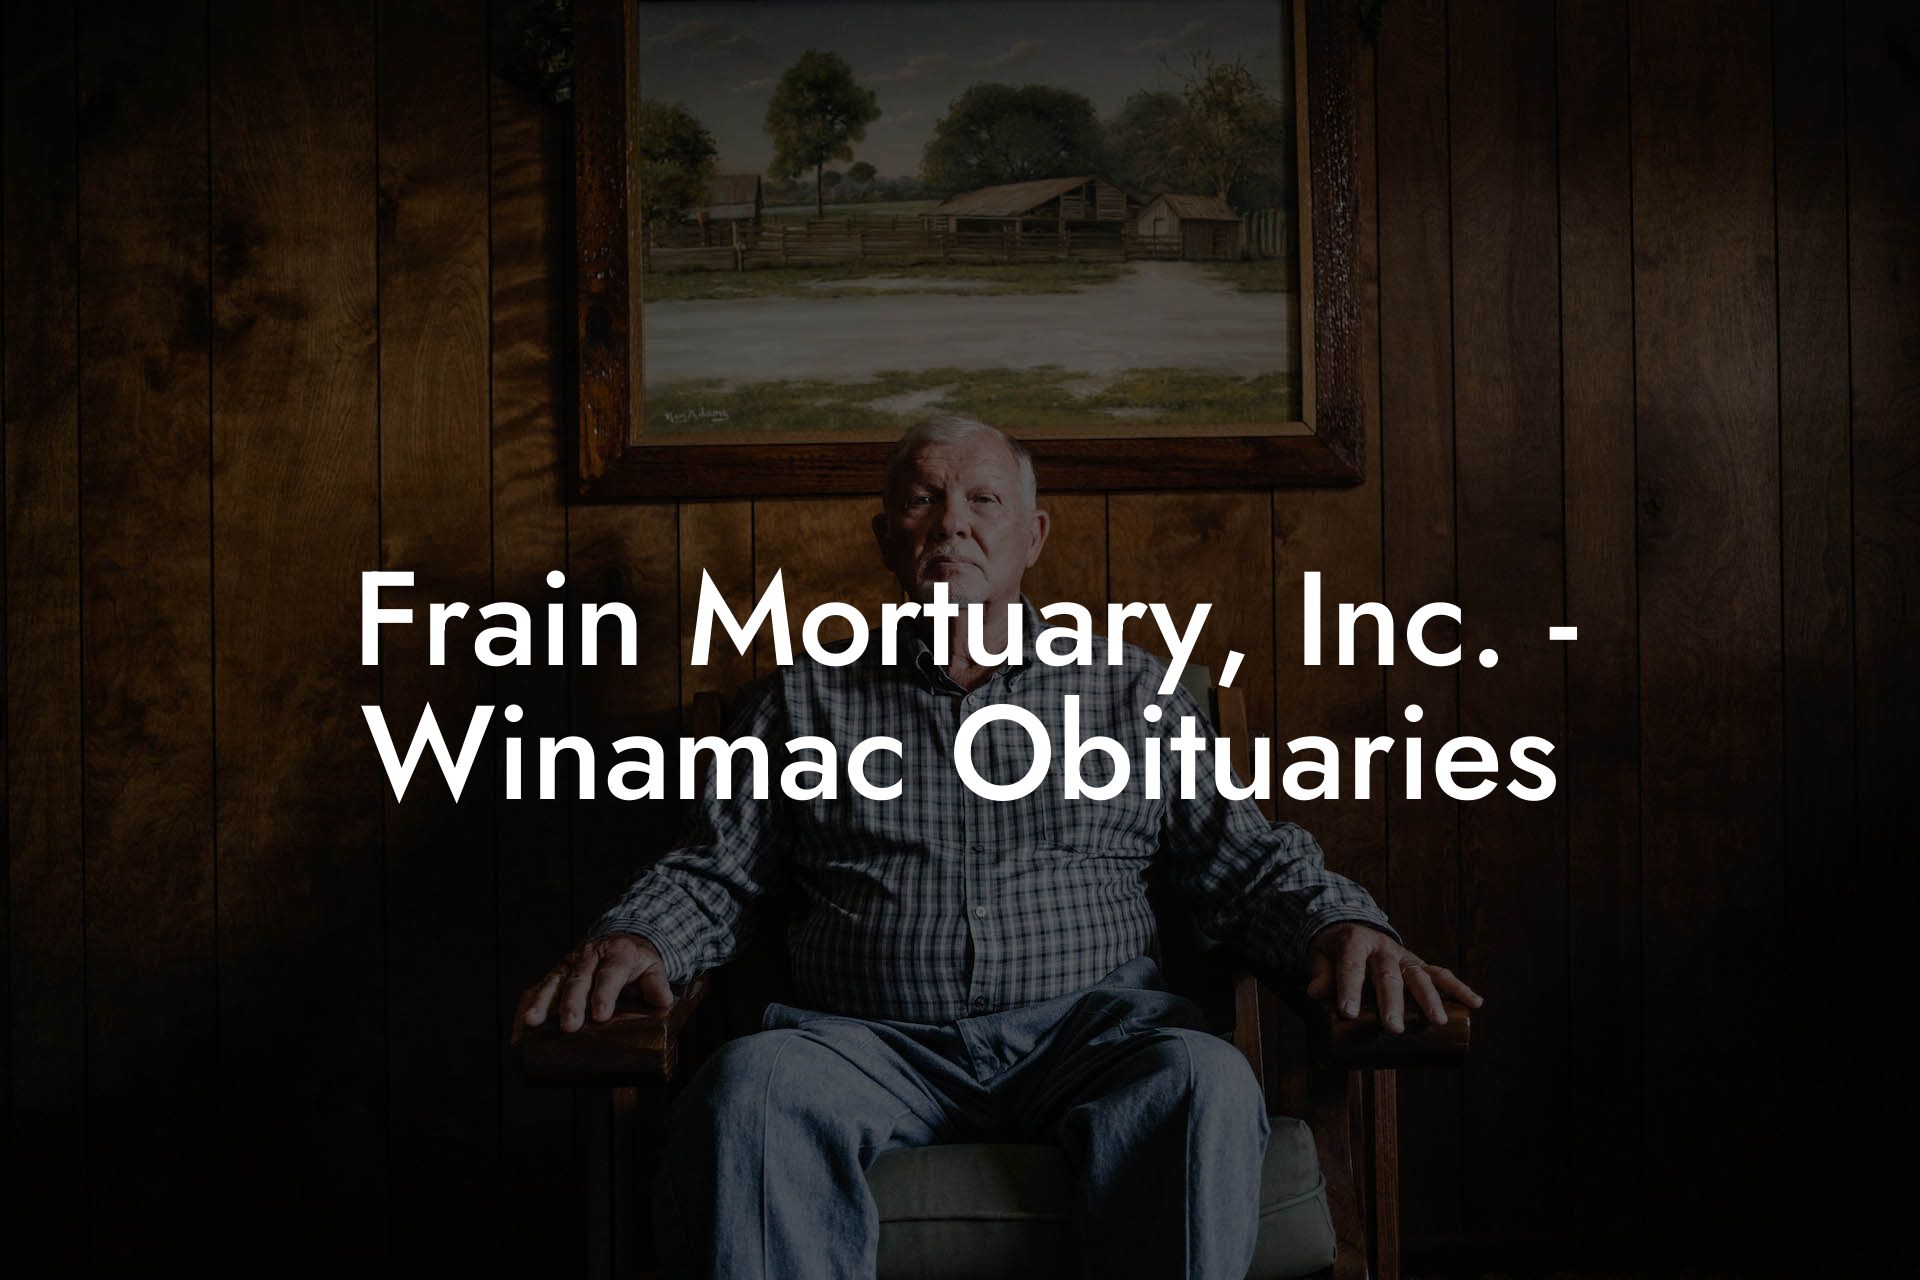 Frain Mortuary, Inc. - Winamac Obituaries